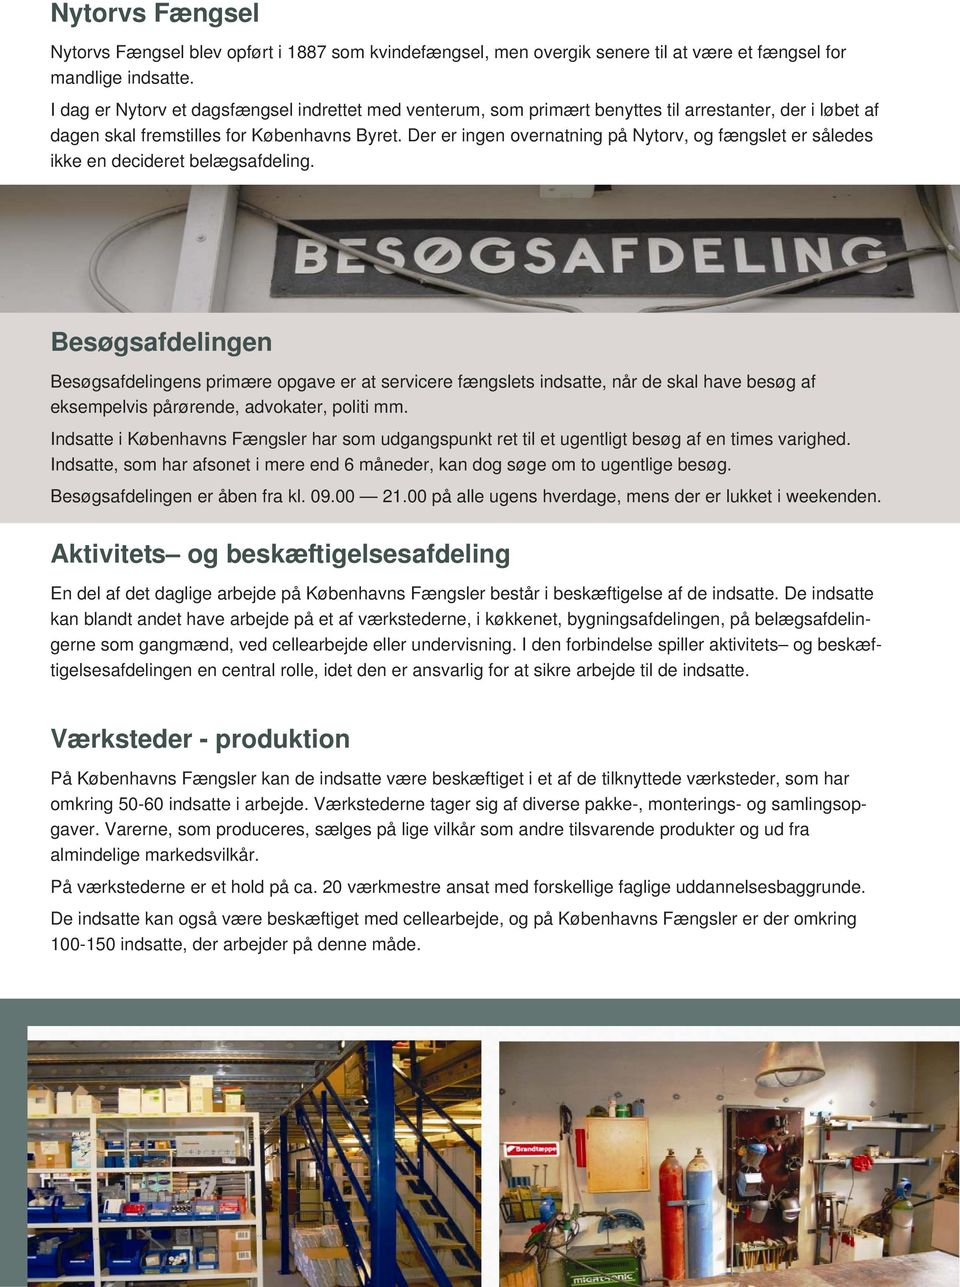 Københavns Fængsler. Én arbejdsplads mange opgaver - PDF Gratis download